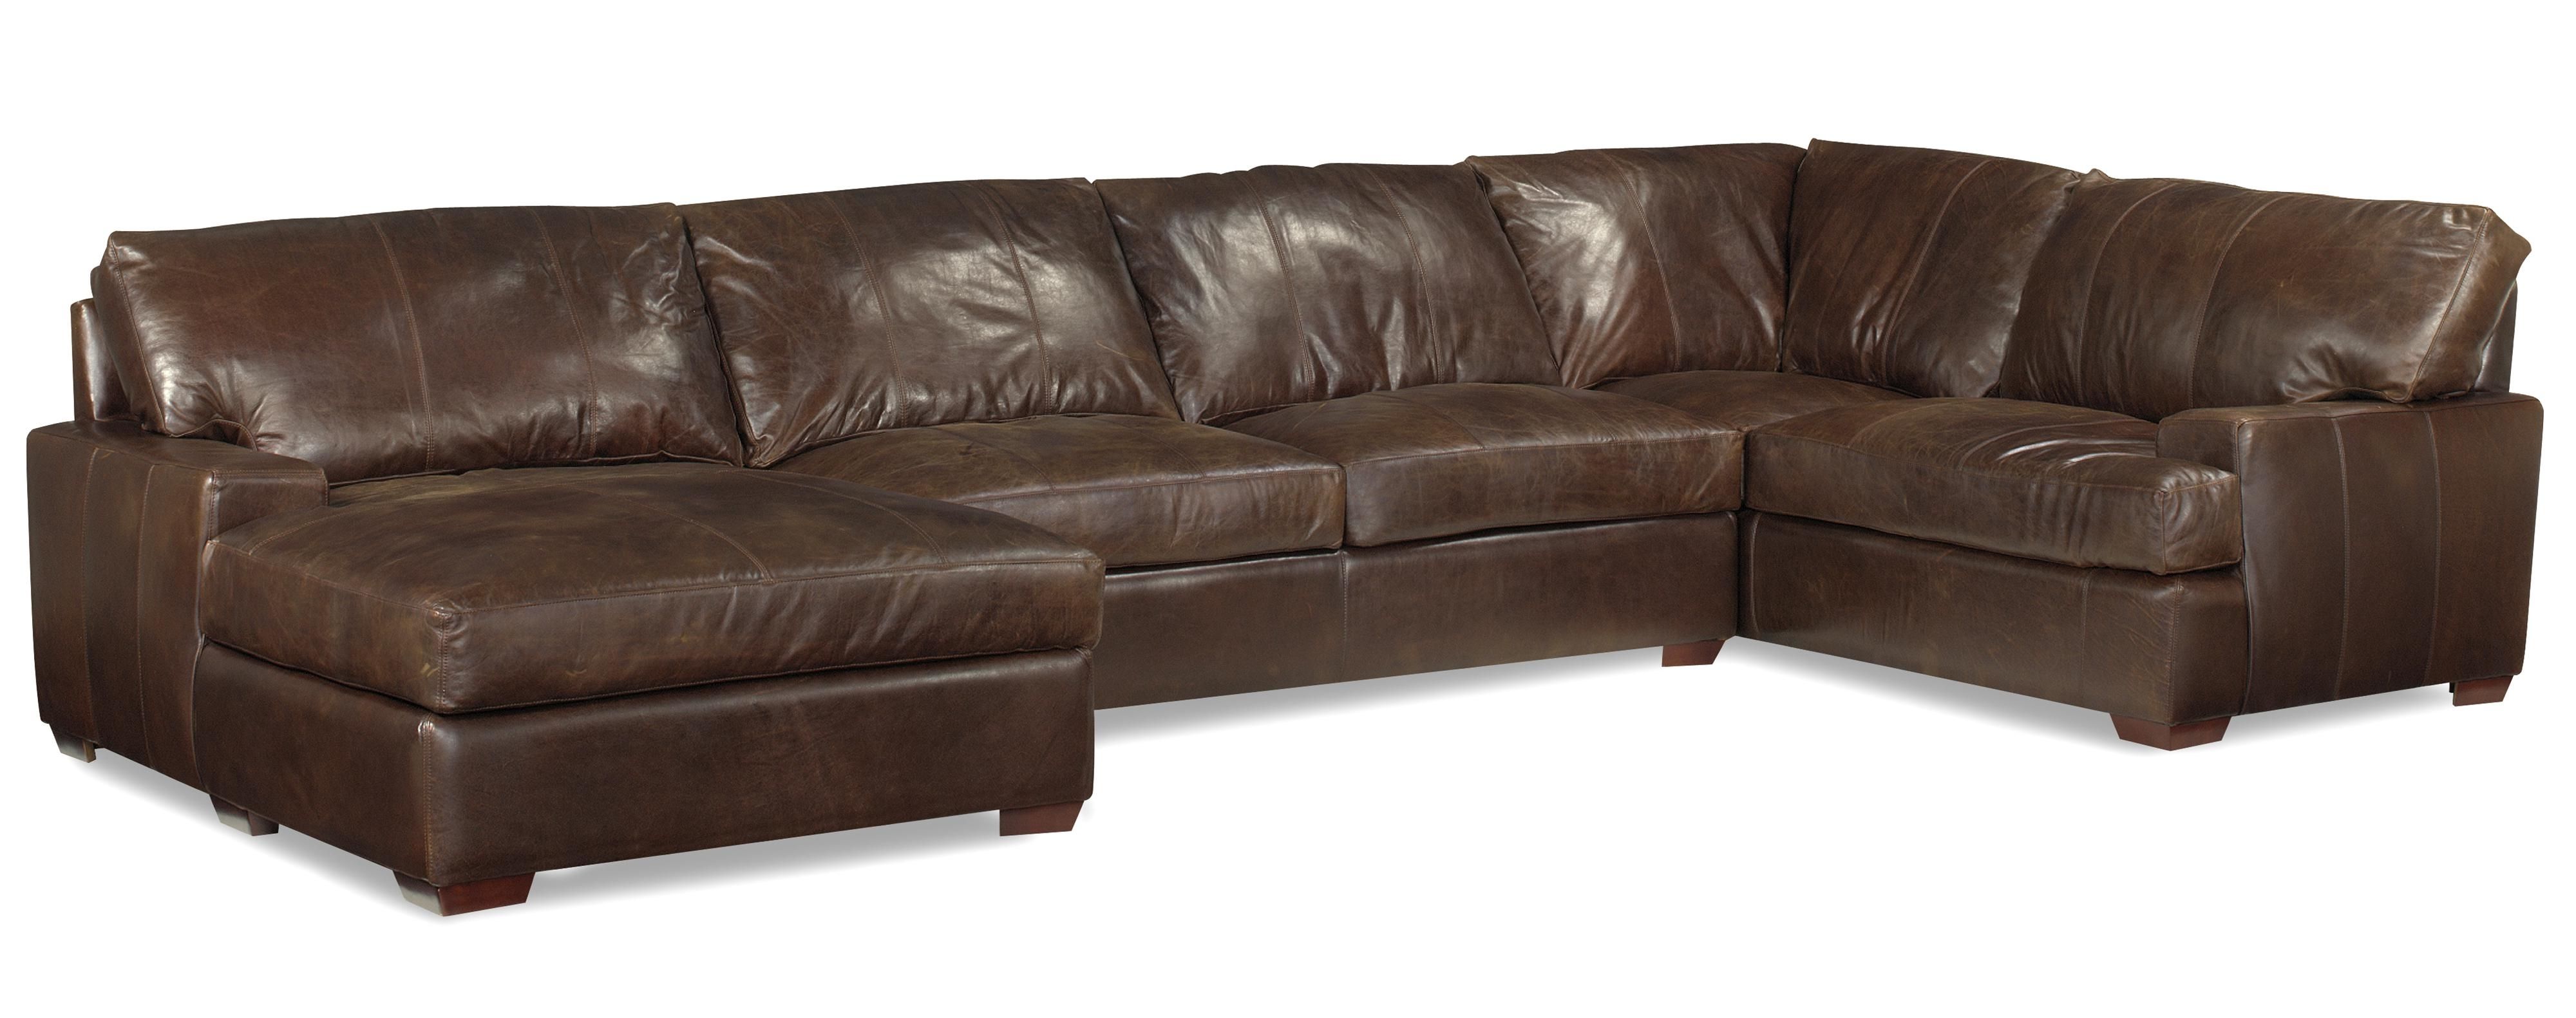 ikea leather sectional sofa